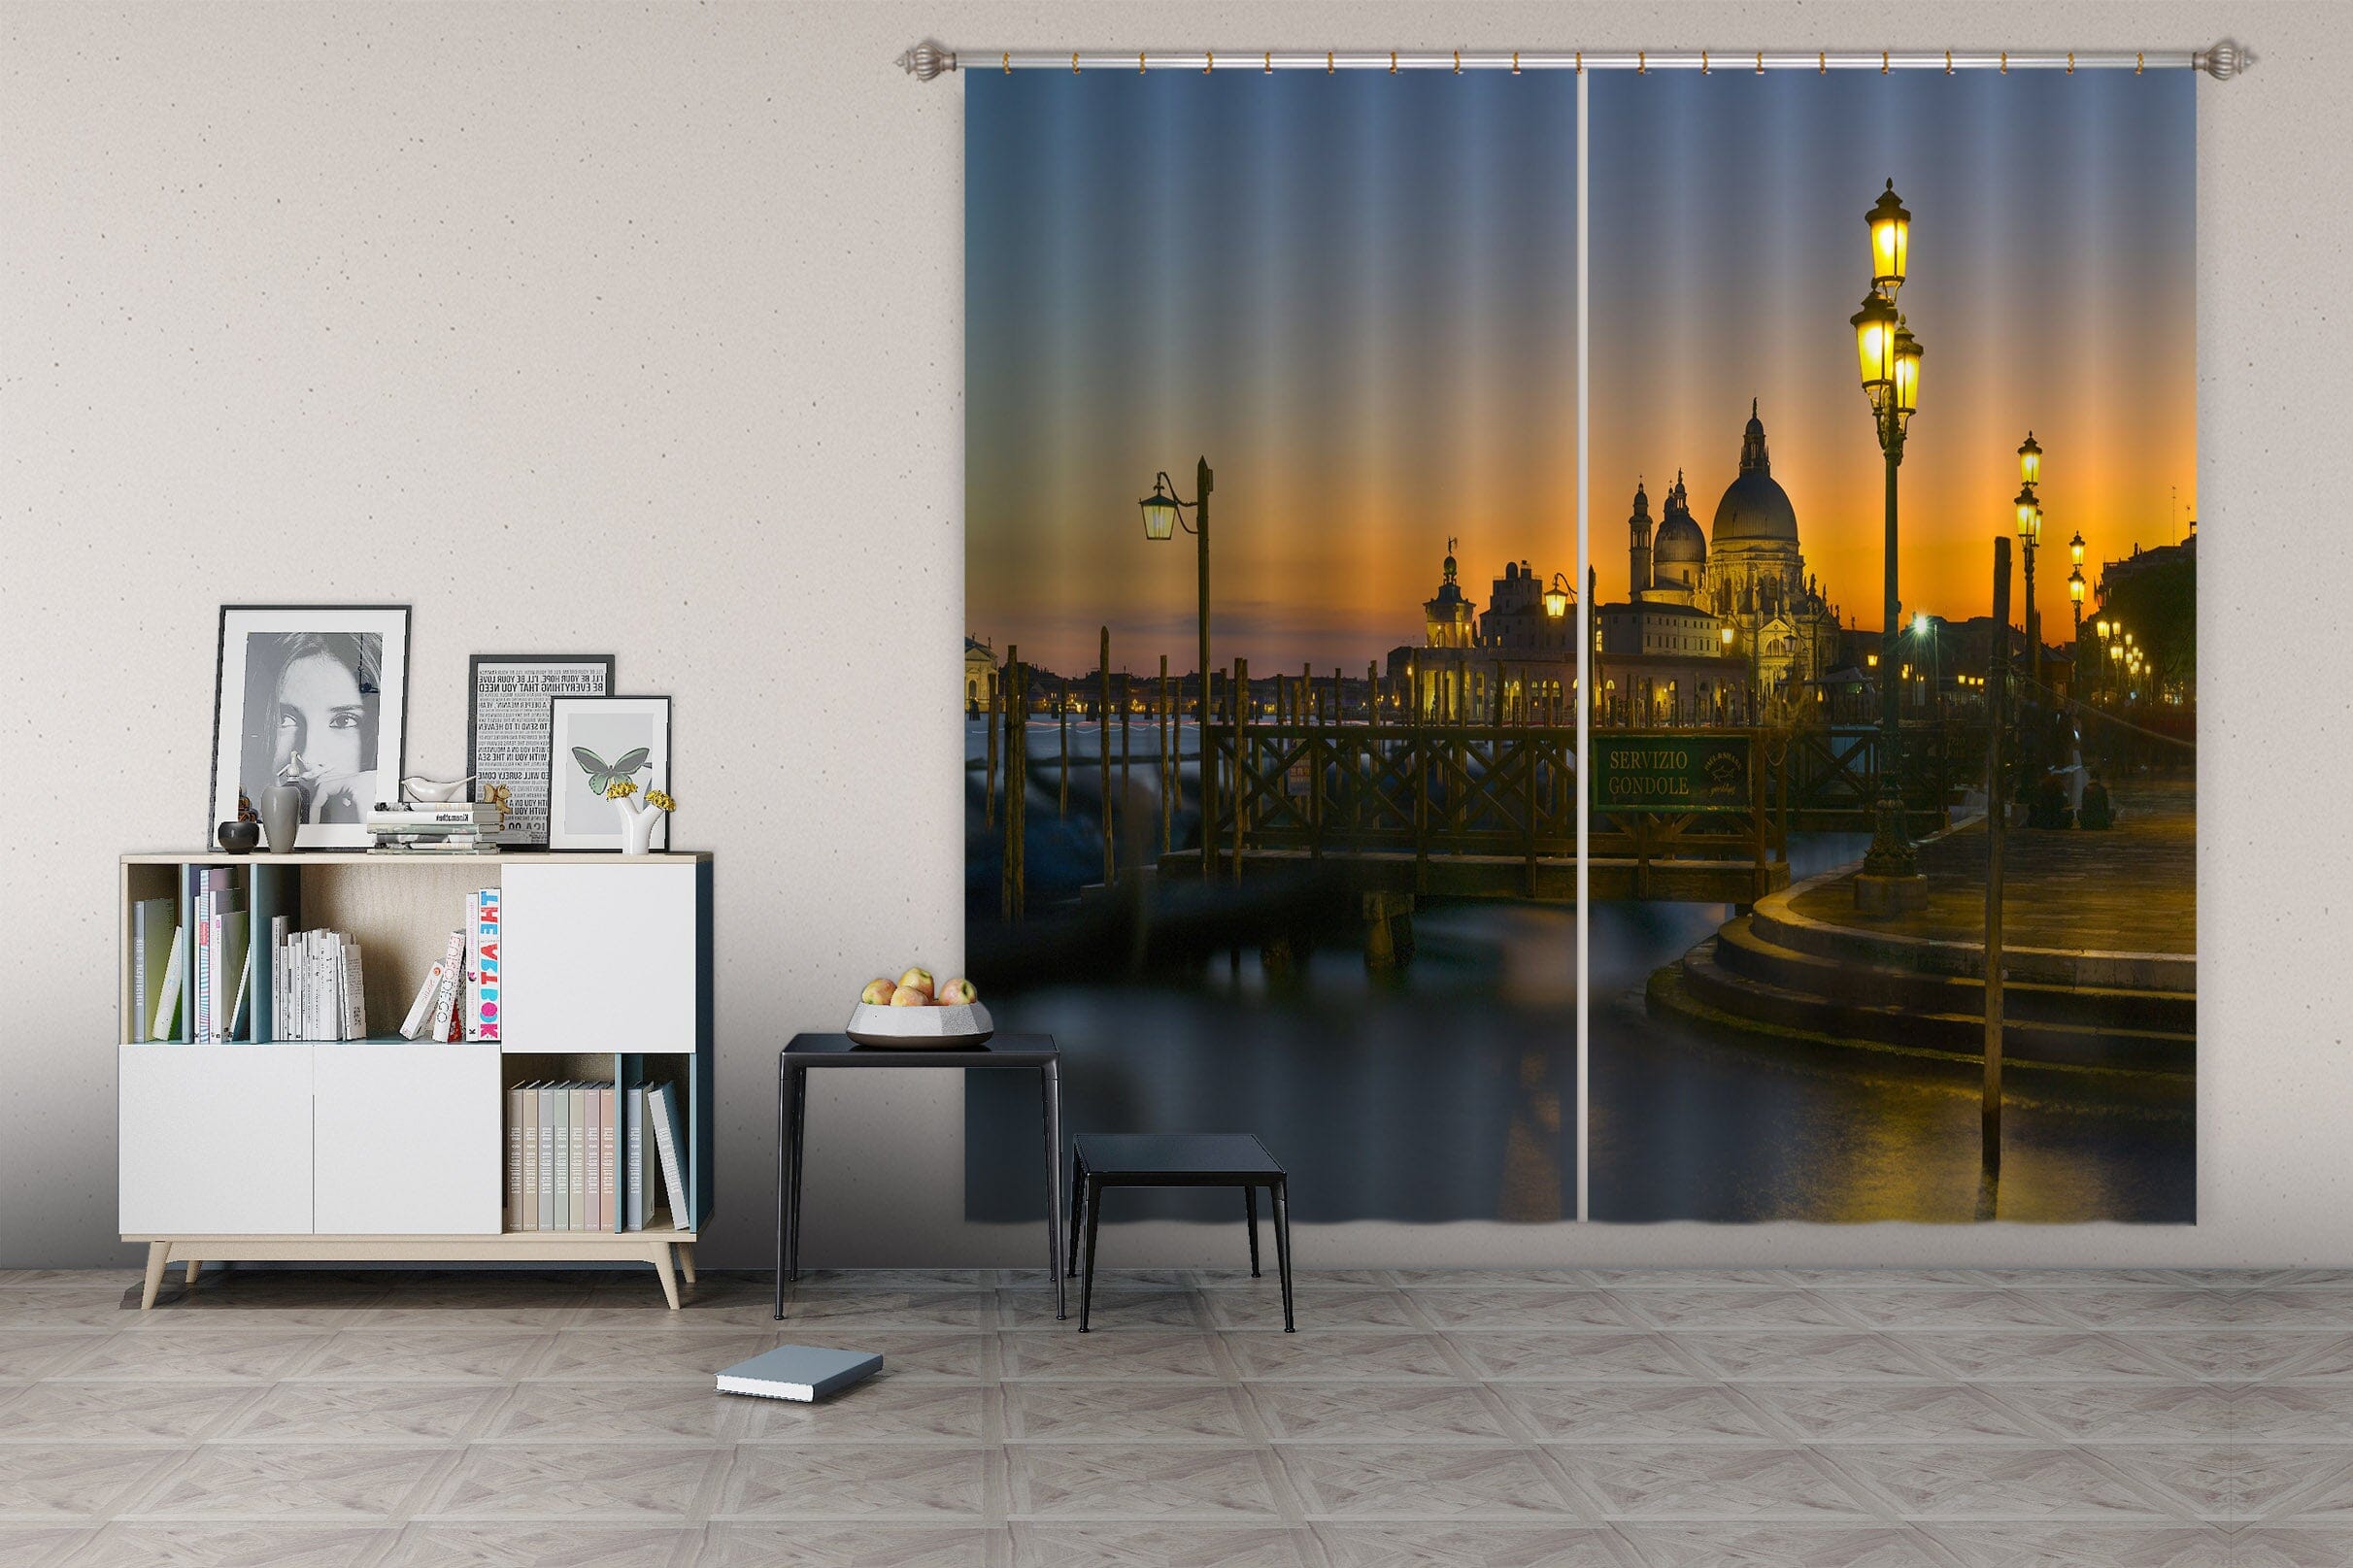 3D Dream City 172 Marco Carmassi Curtain Curtains Drapes Curtains AJ Creativity Home 